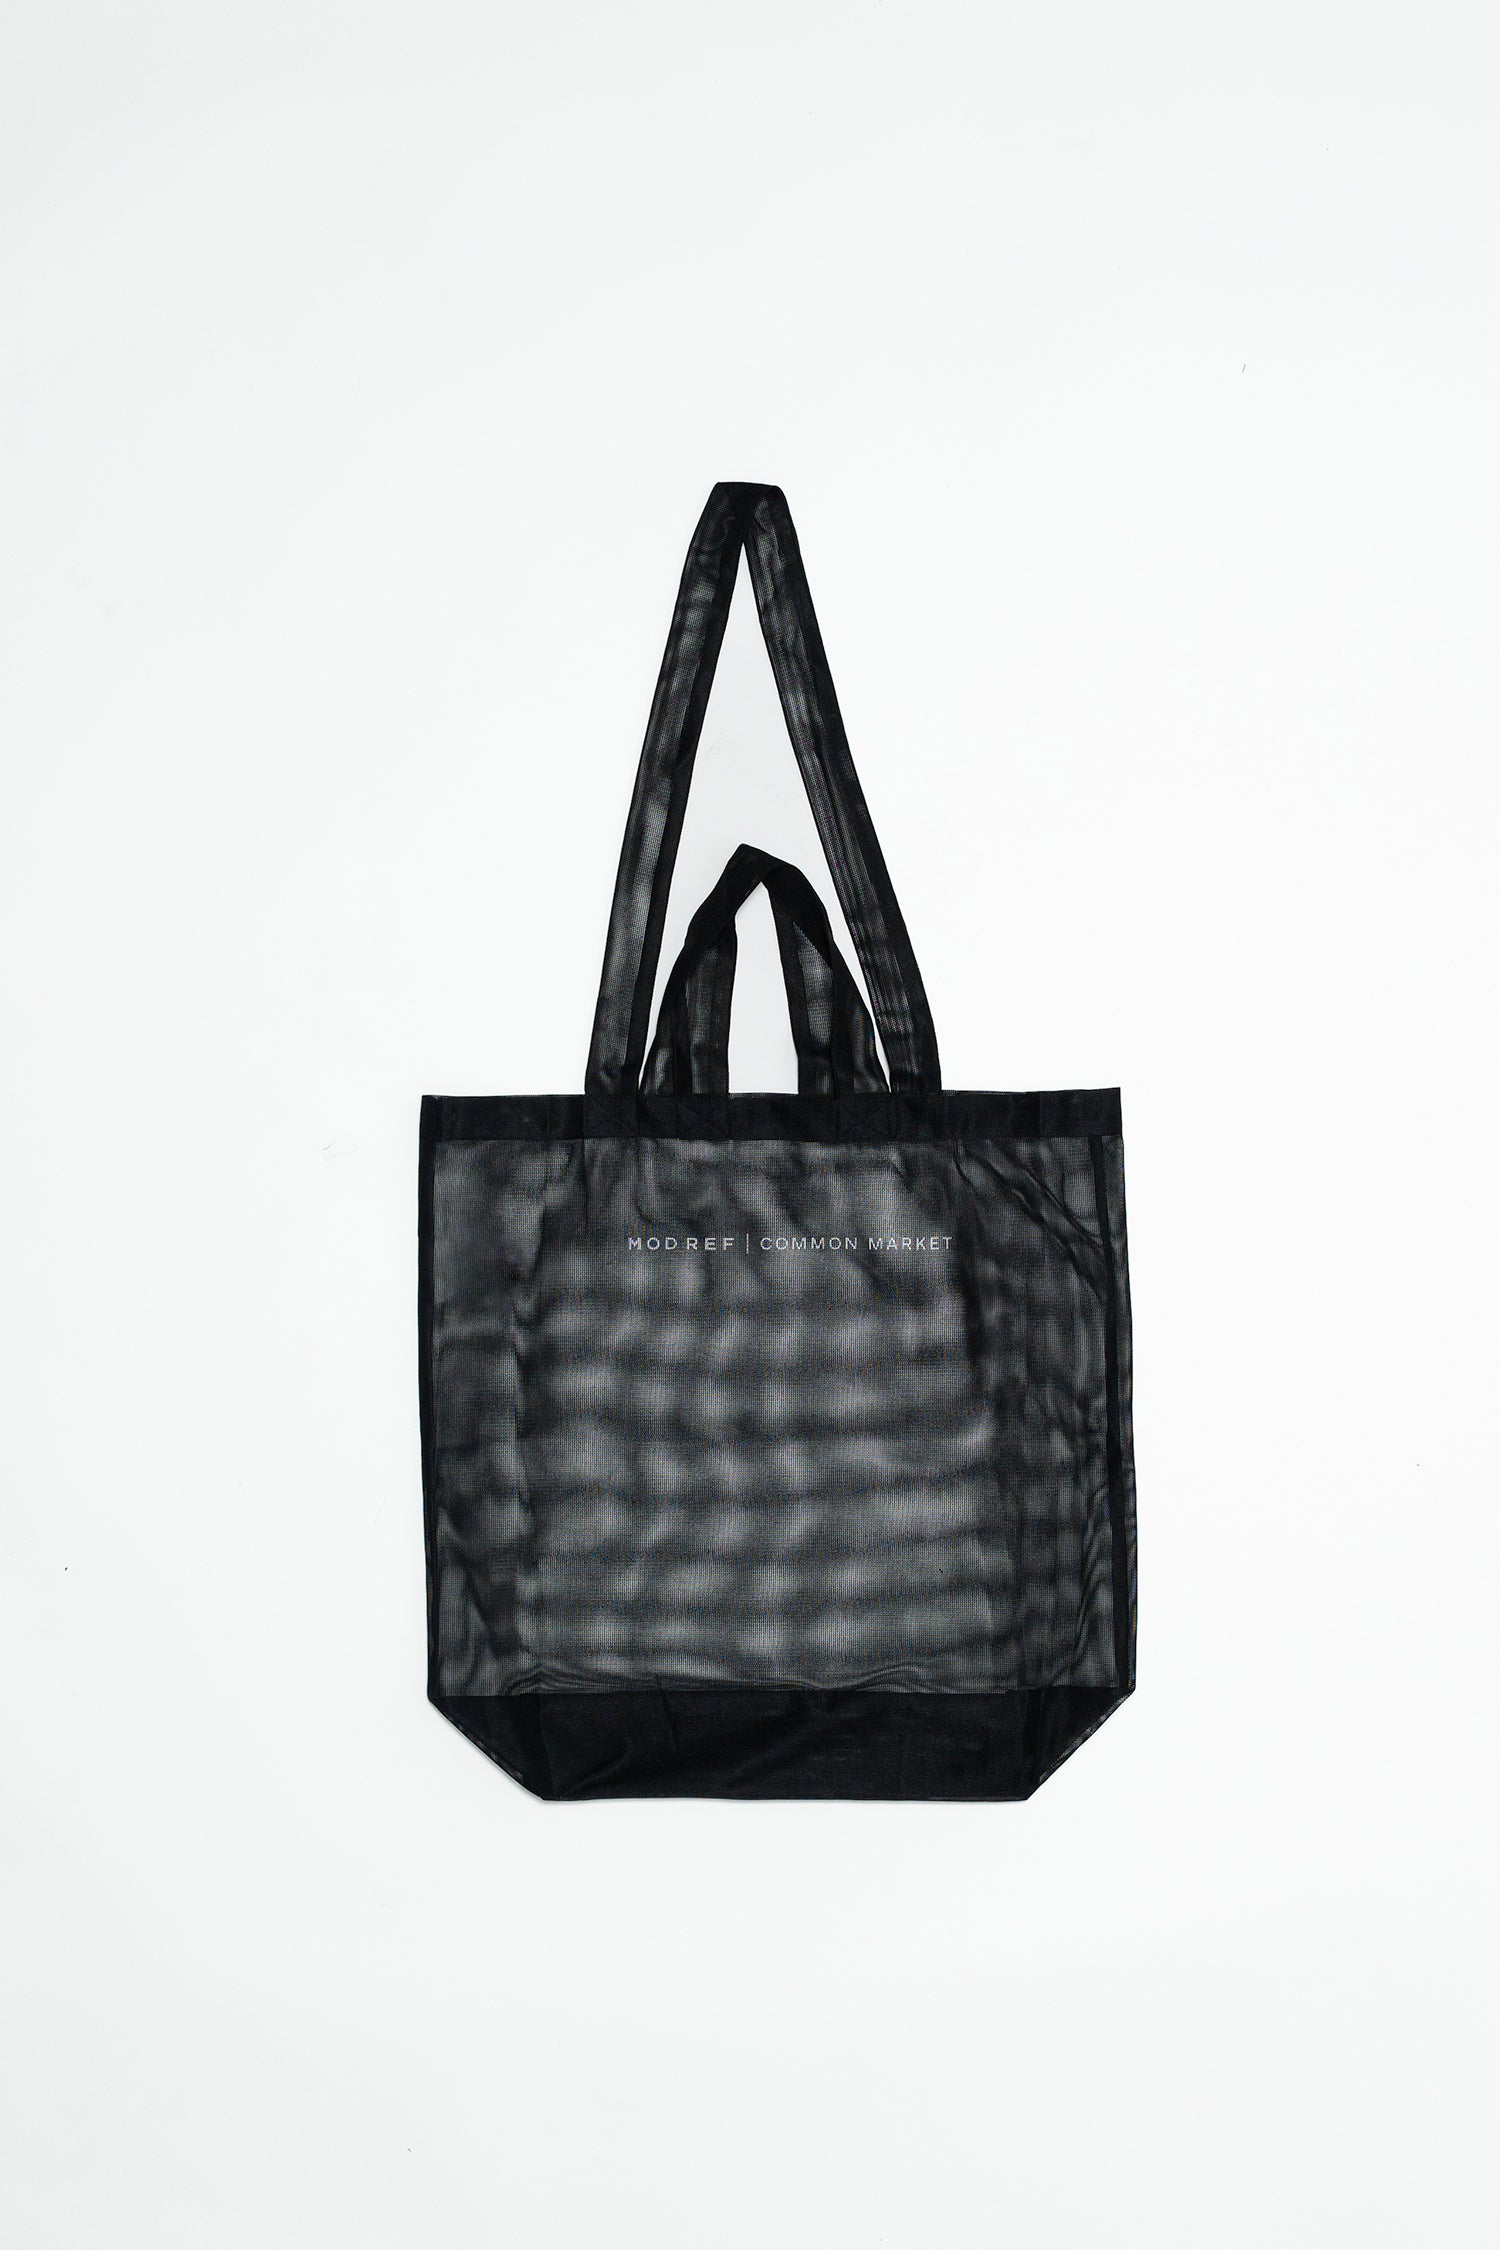 Mesh Tote Bag Black/Grey